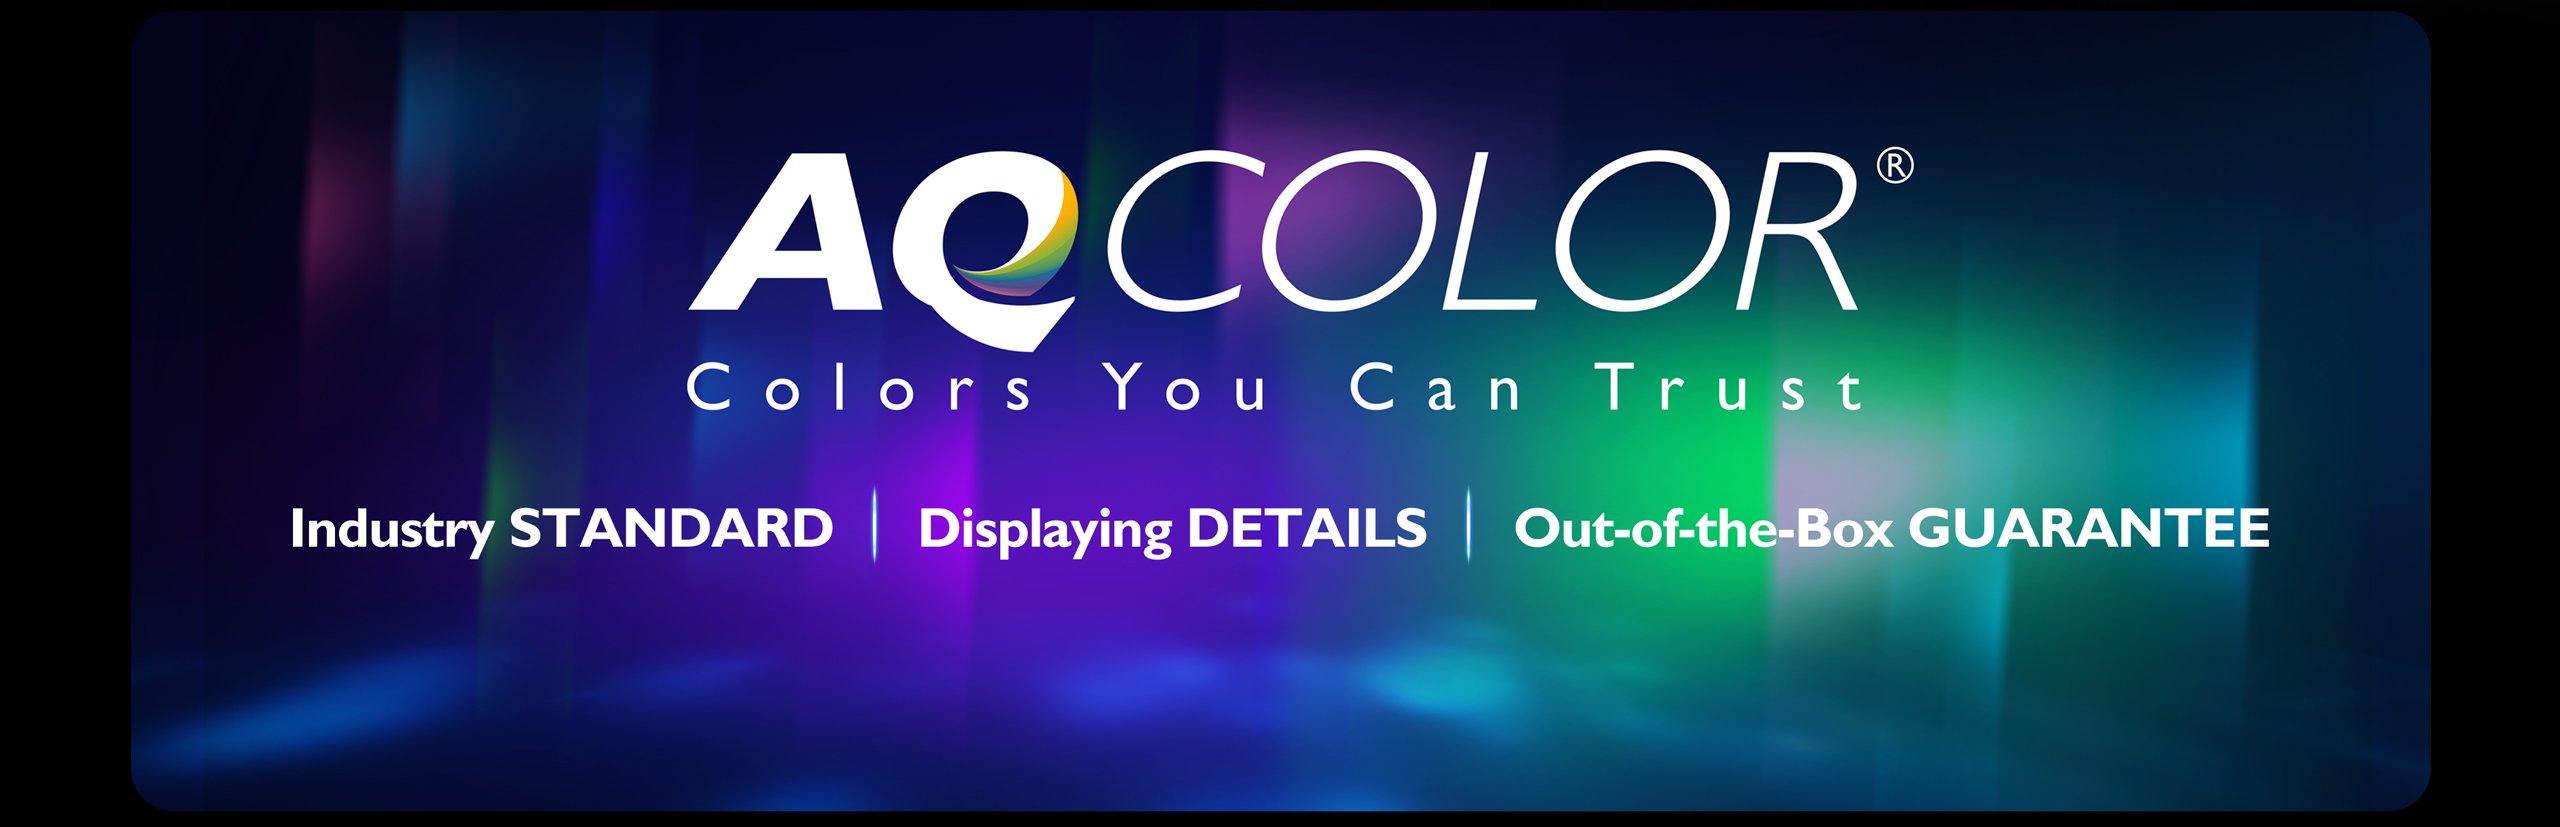 AQCOLOR-technologie wordt geleverd met industrienorm, met details en kant-en-klare garantie